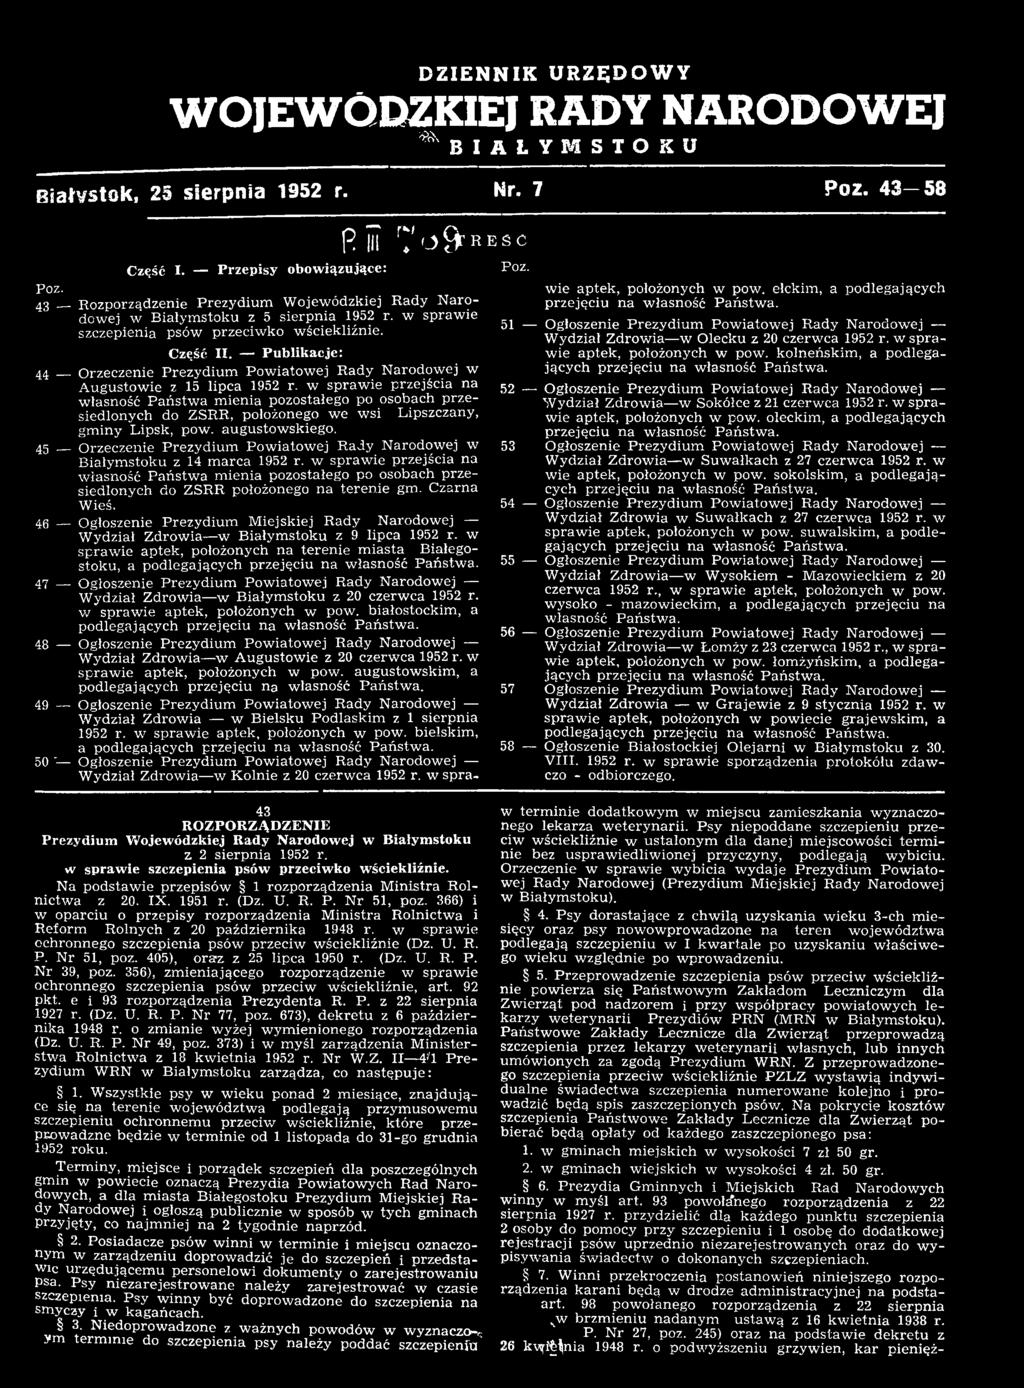 45 Orzeczenie w 53 Białymstoku z 14 marca 1952 r. w sprawie przejścia na własność Państwa mienia pozostałego po osobach przesiedlonych do ZSRR położonego na terenie gm. Czarna Wieś.